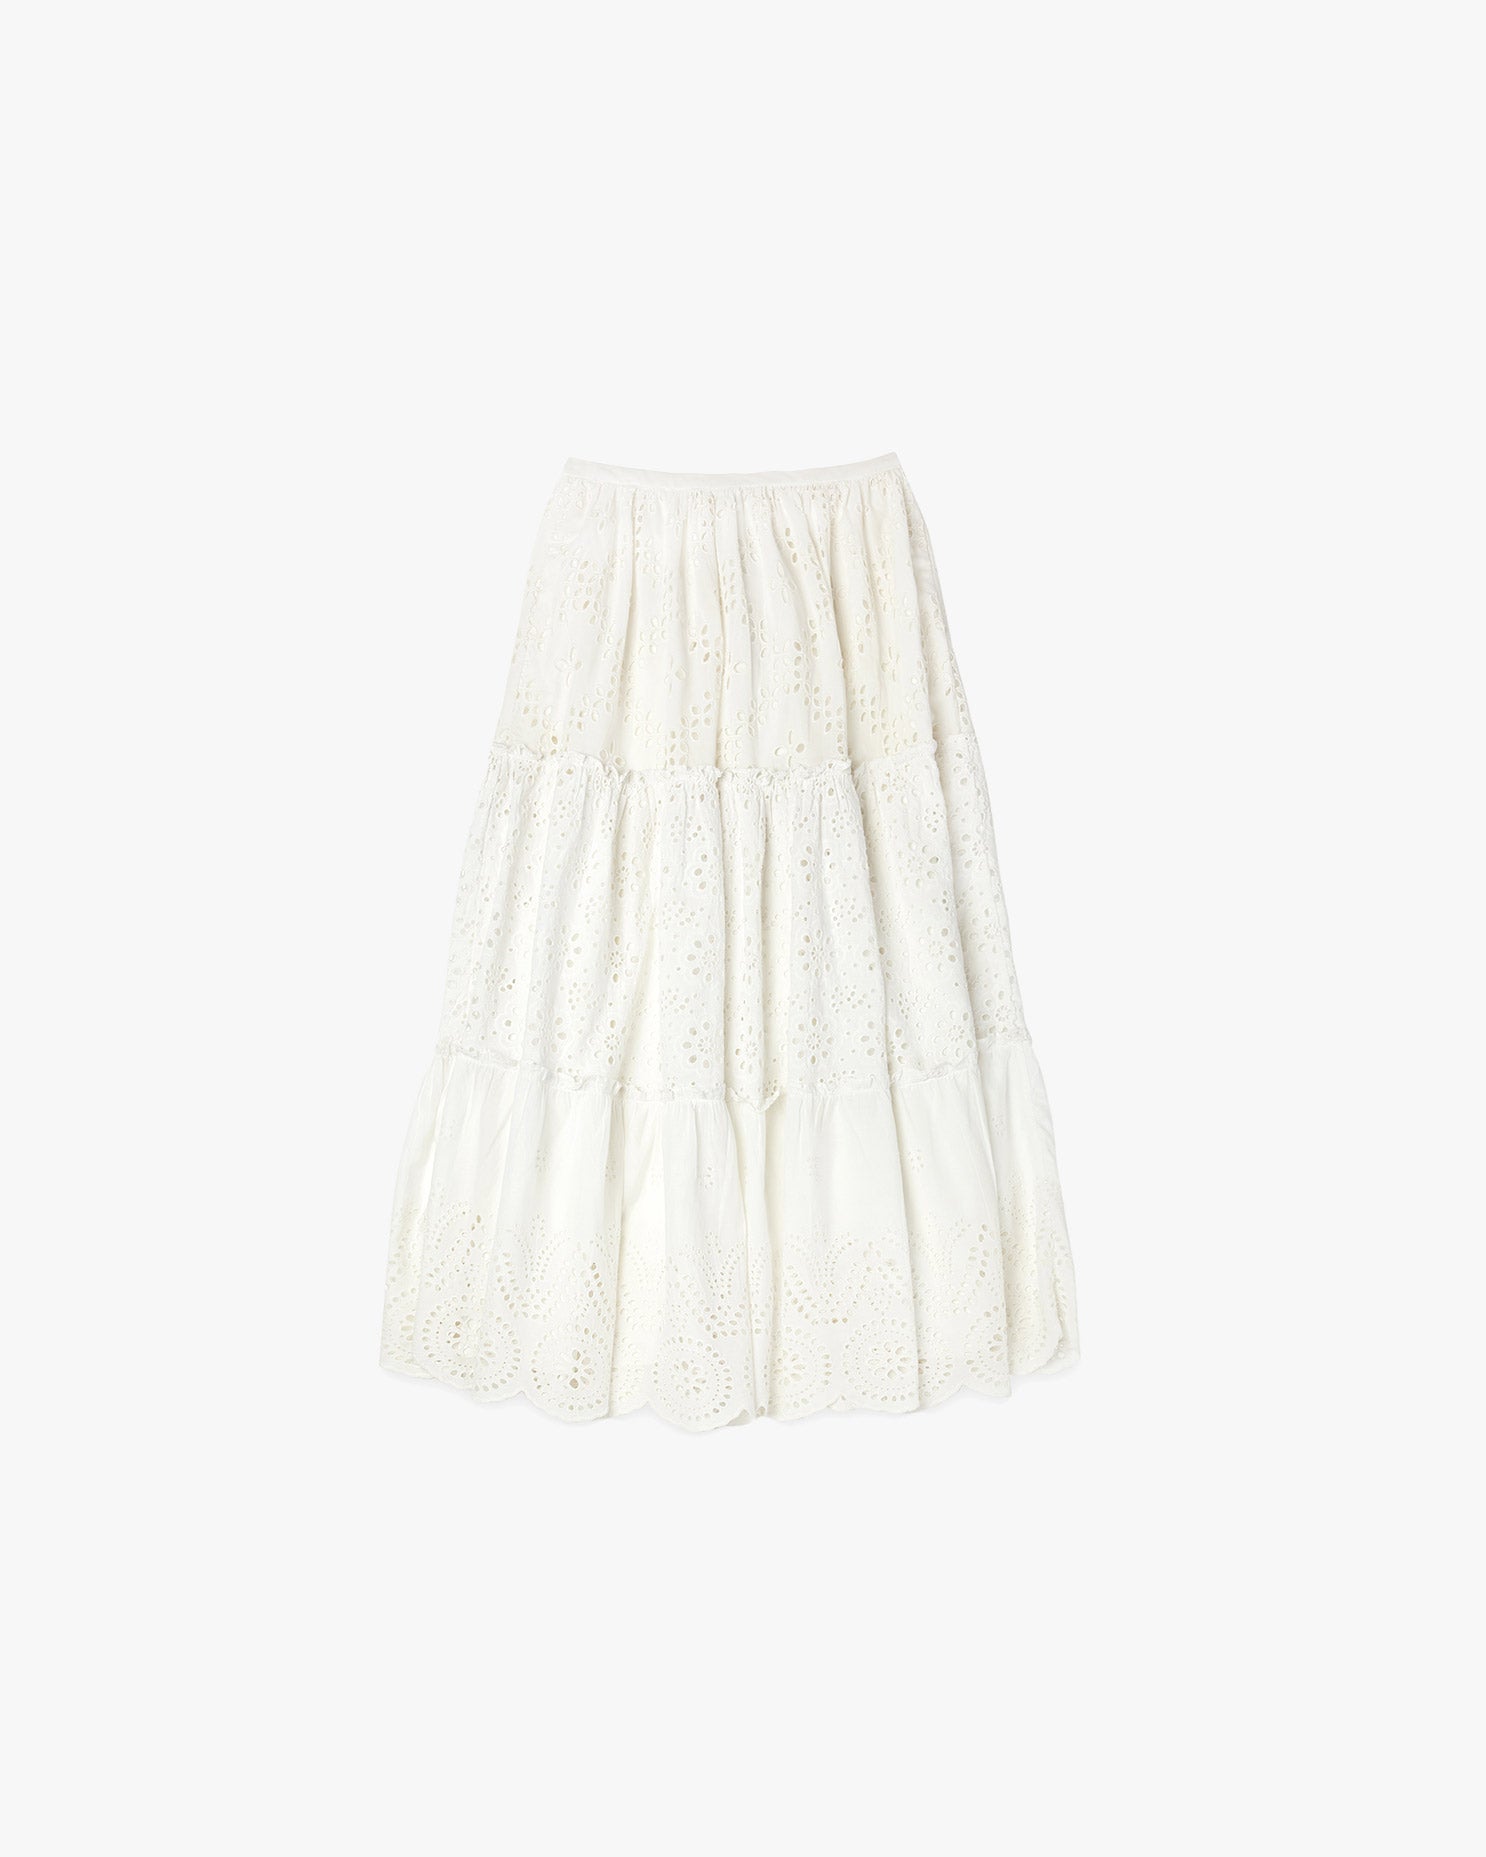 Penelope Skirt in White